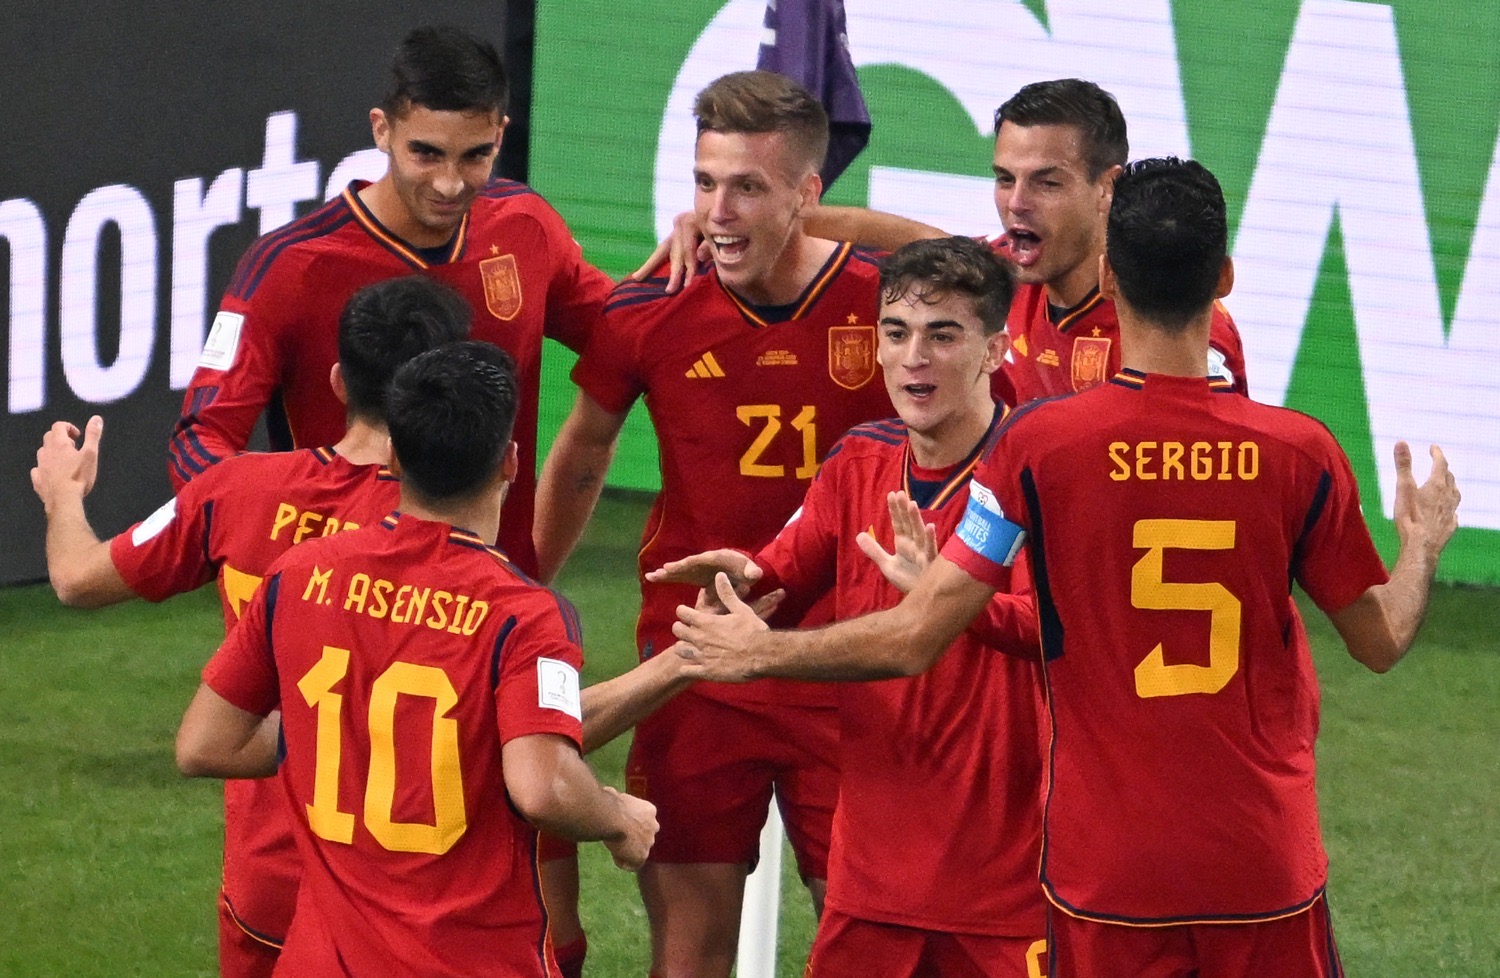 WM 2022 Video - Elfmeterschießen Marokko gegen Spanien am Dienstag, 16 Uhr - Wer überträgt das WM-Spiel?